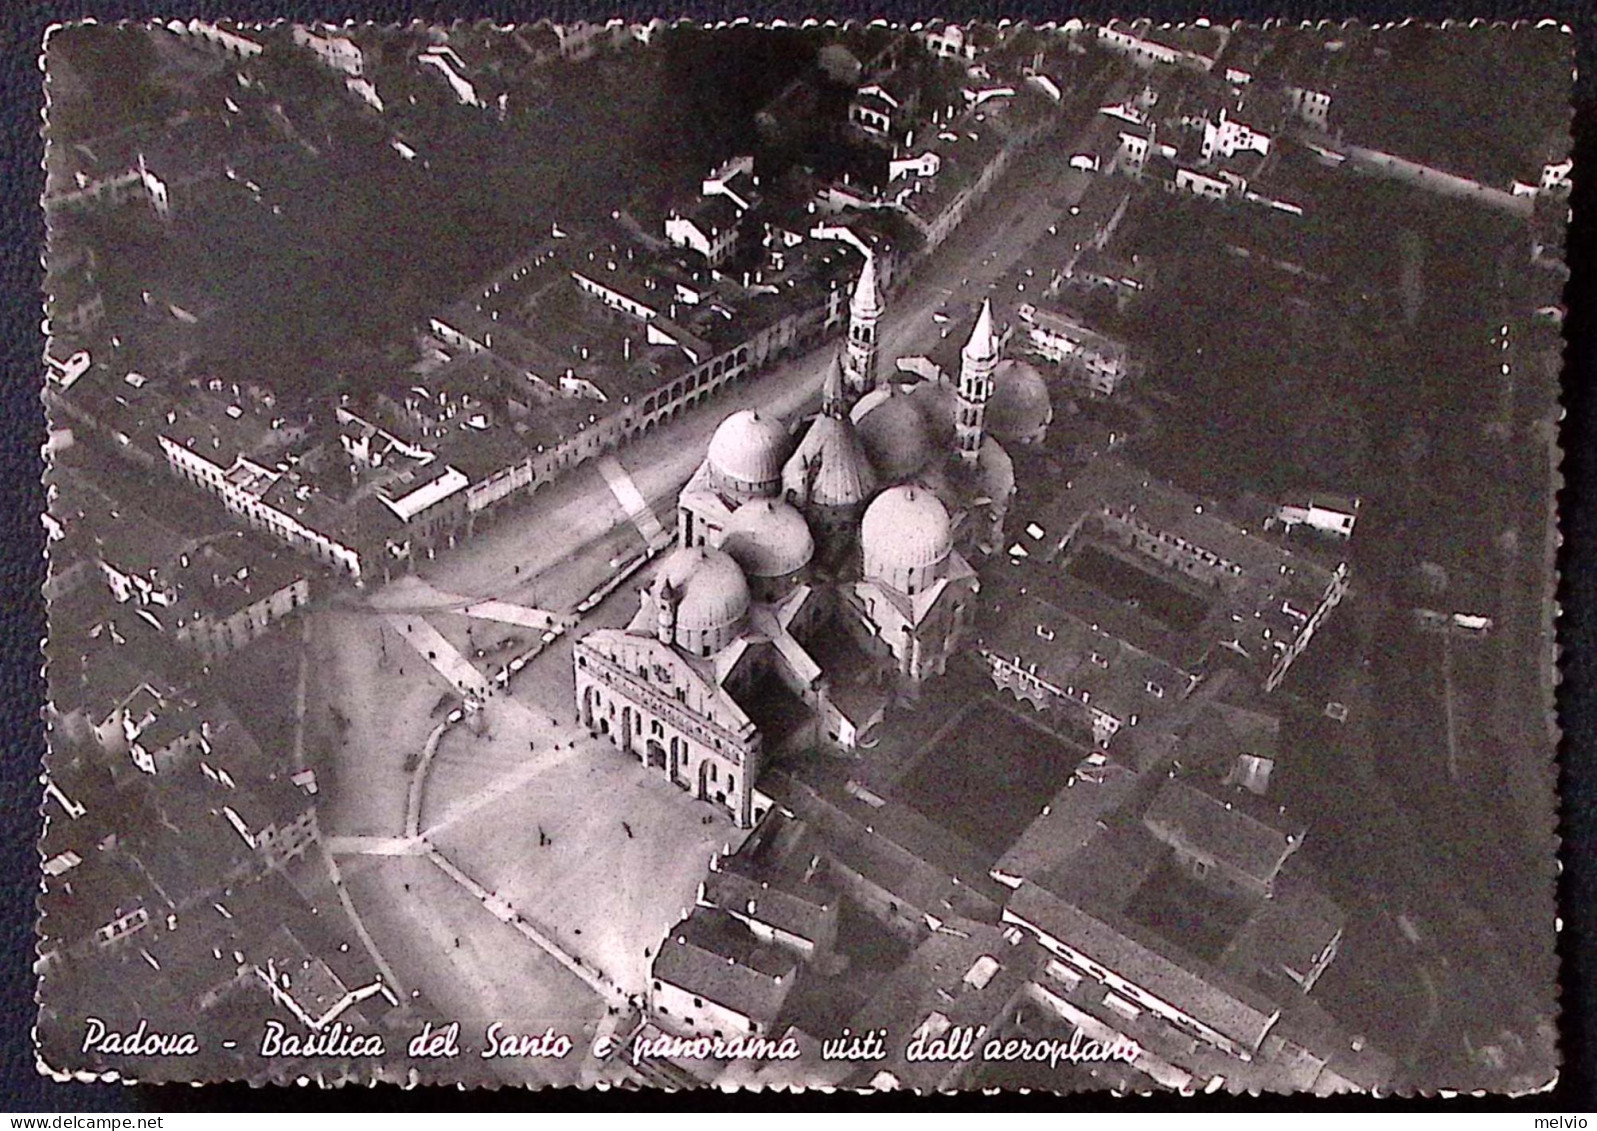 1949-PADOVA Basilica Del Santo E Panorama Dall'aeroplano Viaggiata Padova (25.8) - Padova